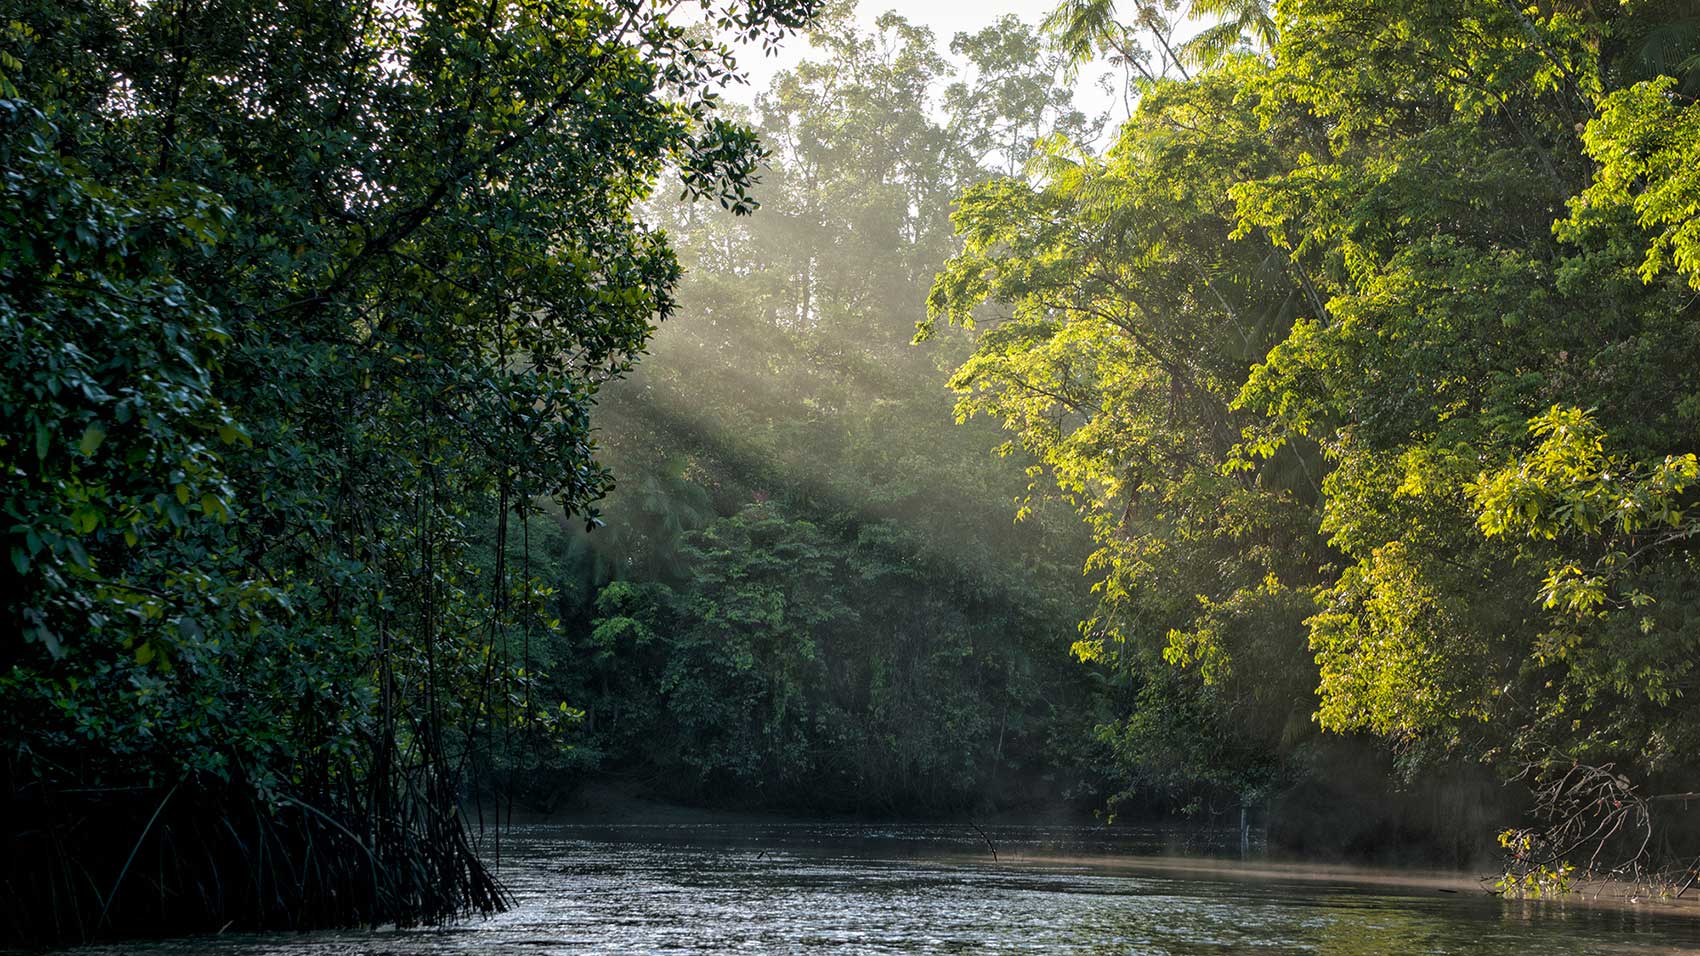 Erhaltungspartner SC Johnson und Conservation International arbeiten daran, die Abholzung im Amazonas-Gebiet zu stoppen